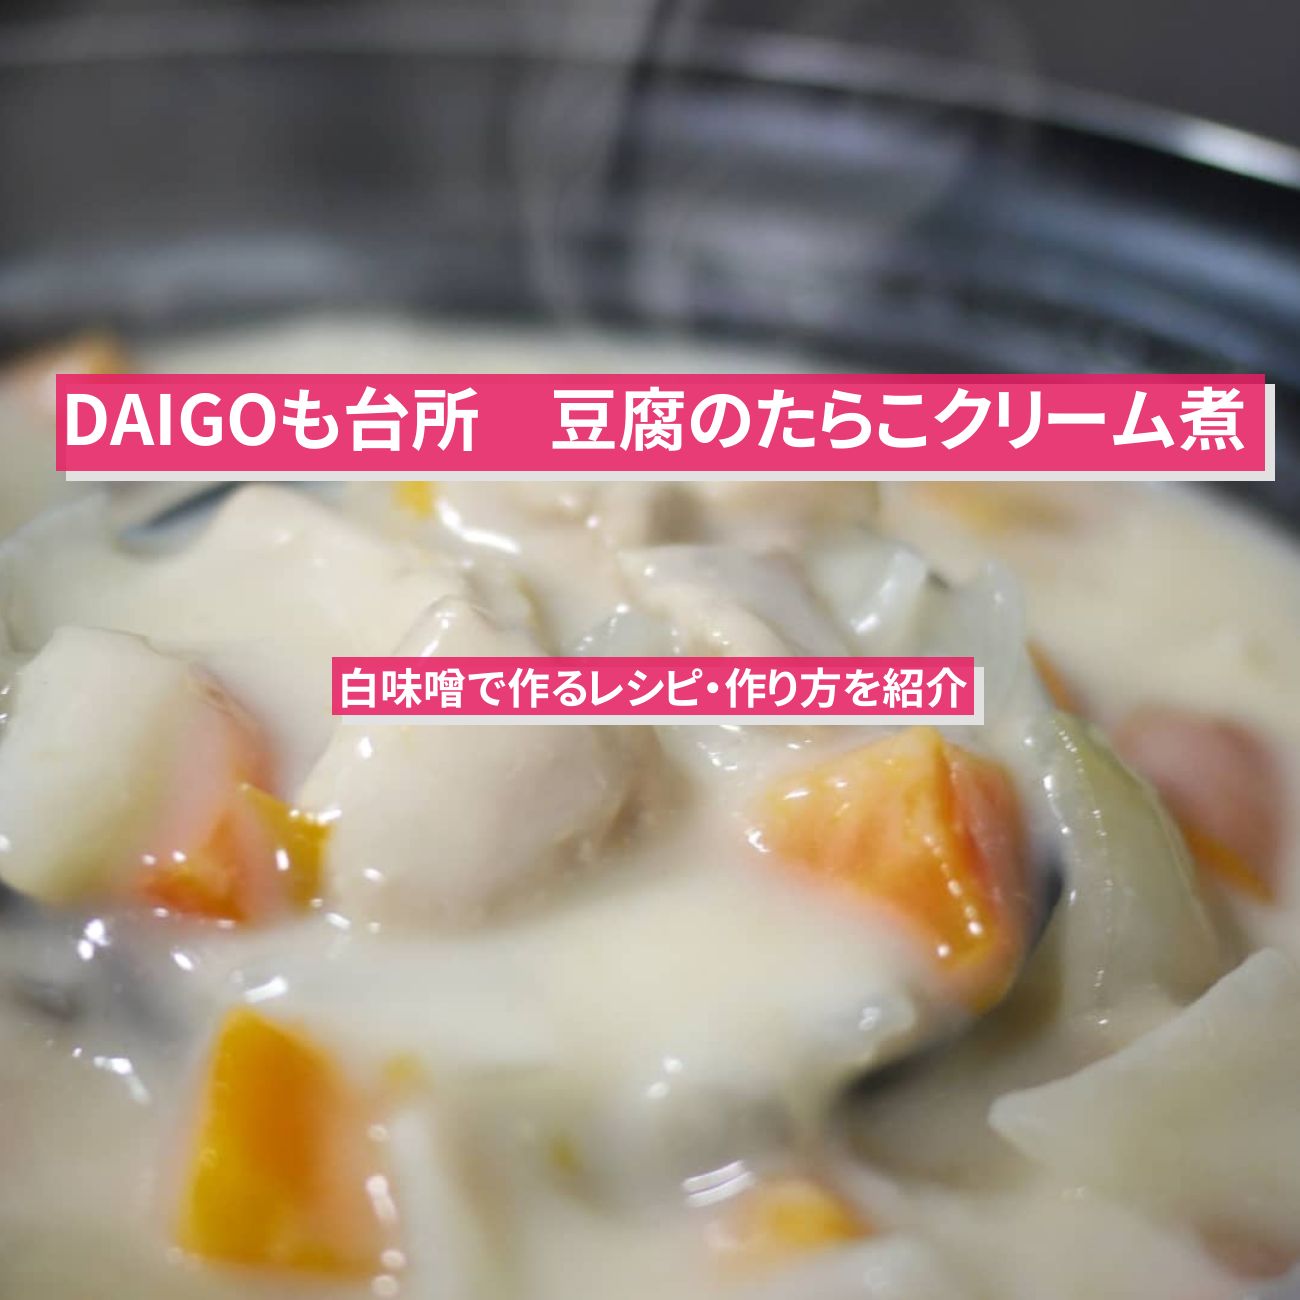 【DAIGOも台所】『豆腐のたらこクリーム煮』のレシピ・作り方を紹介〔ダイゴも台所〕